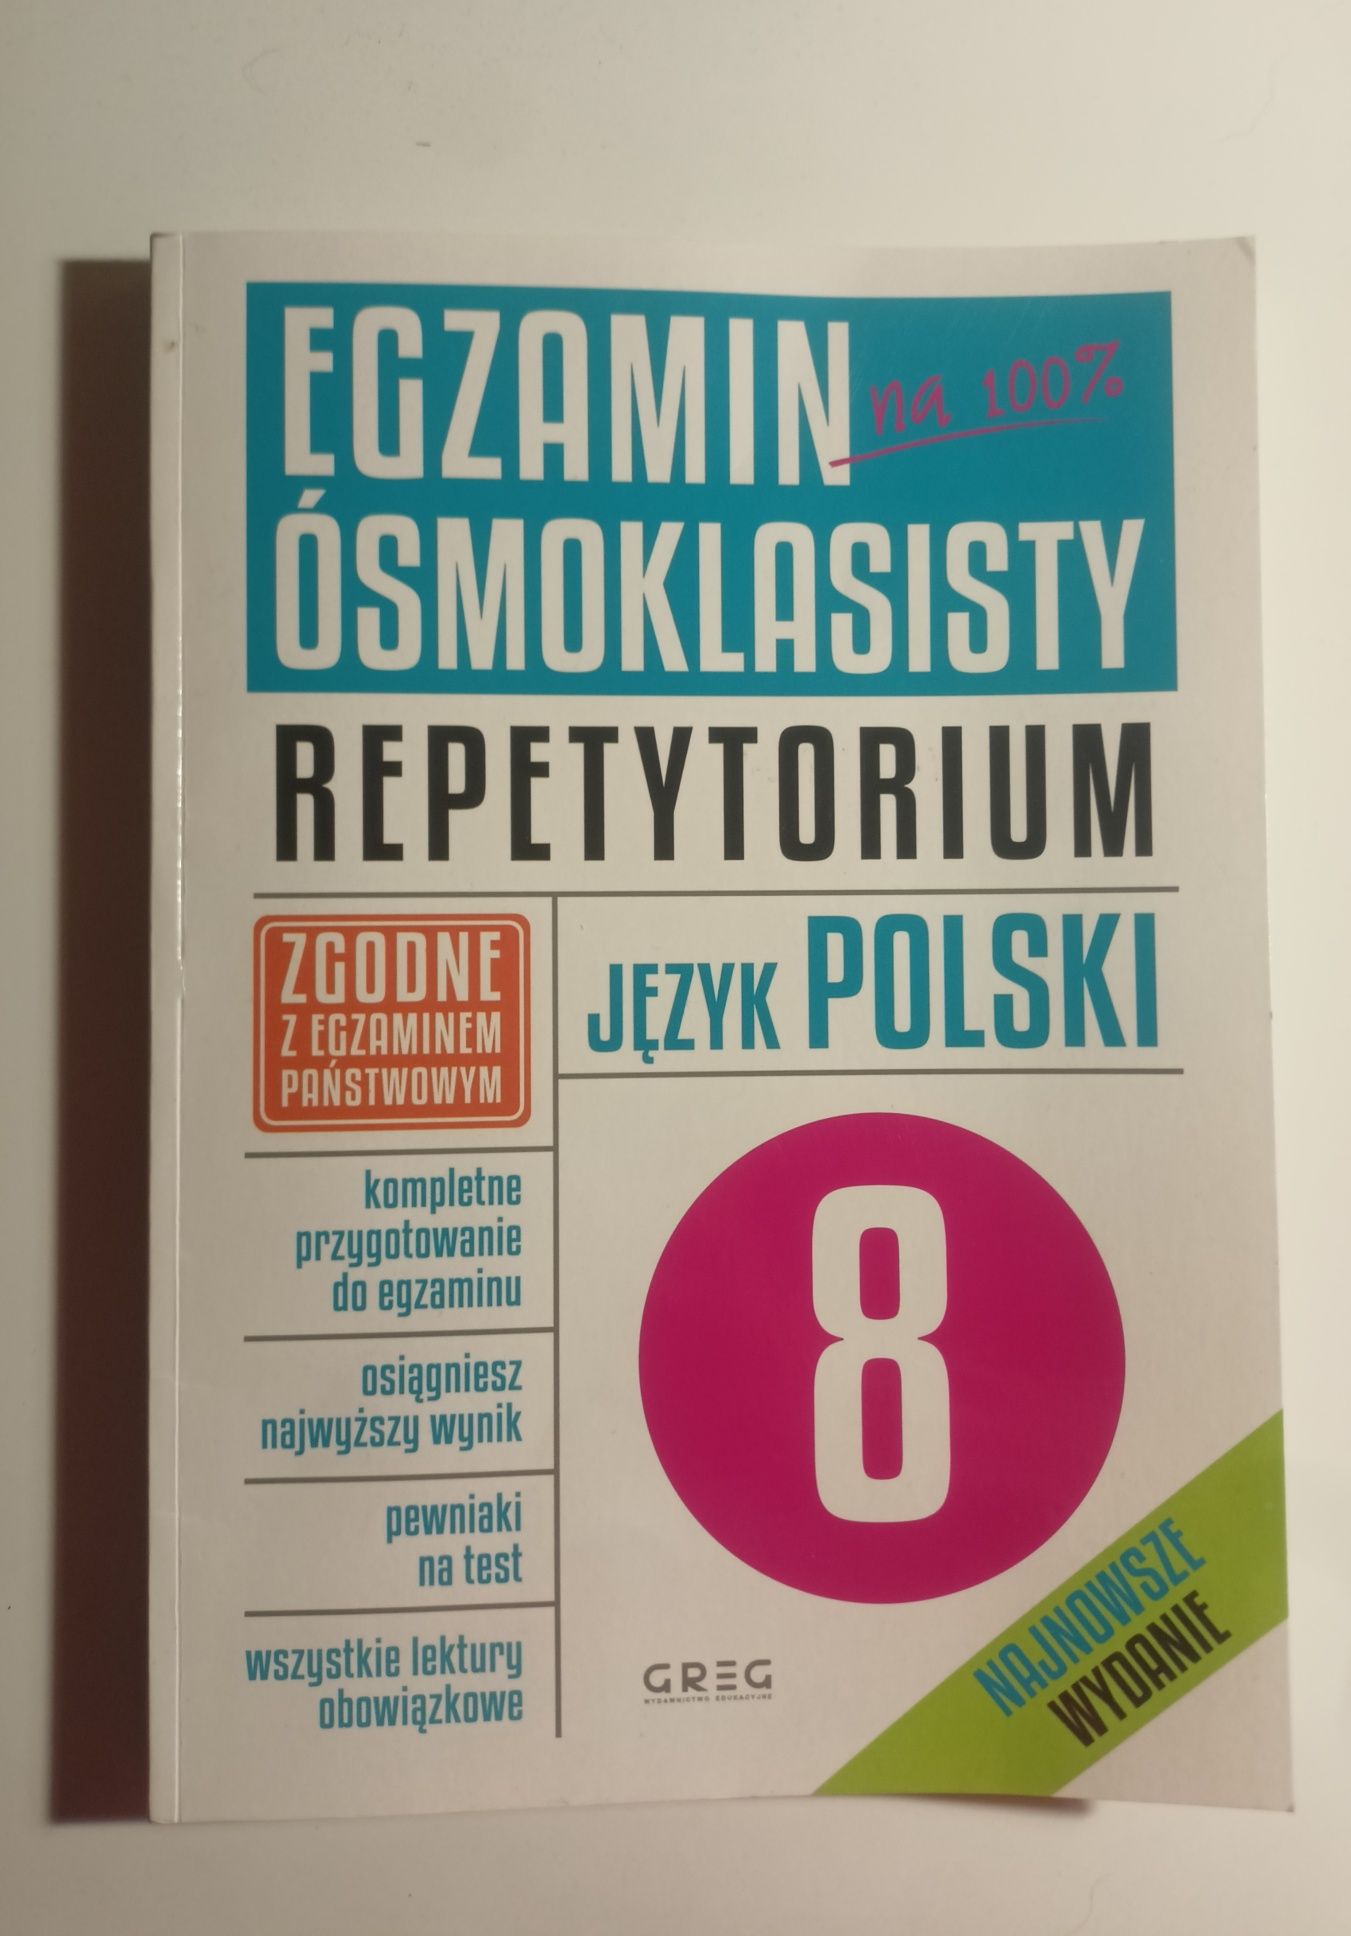 Repetytorium J.Polski